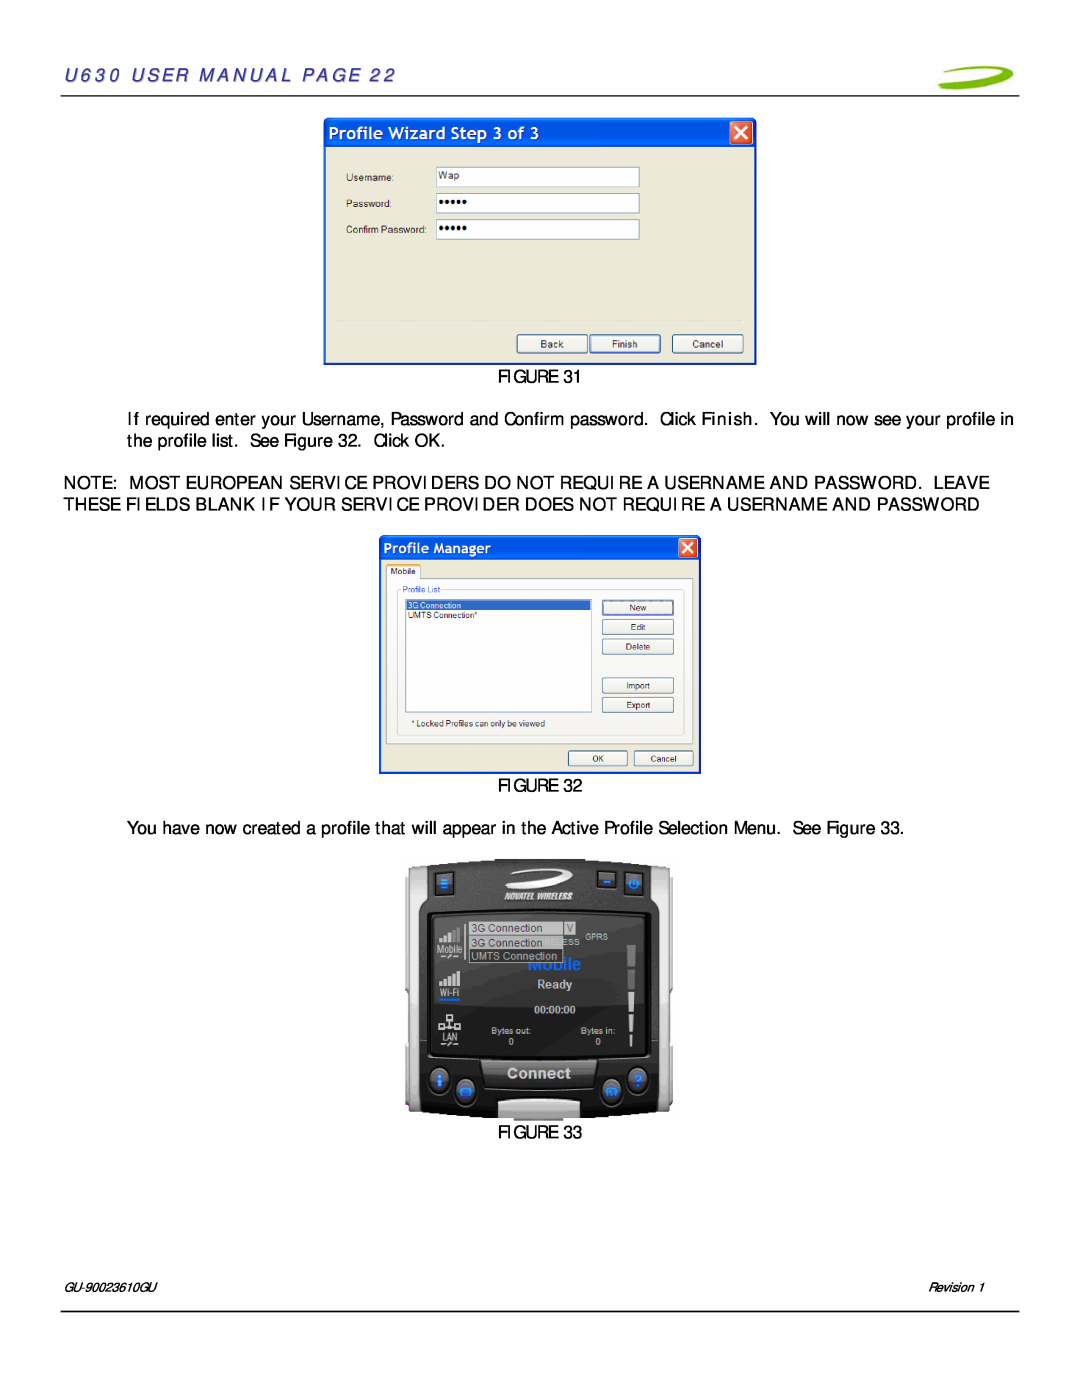 InFocus user manual U630 USER MANUAL PAGE 